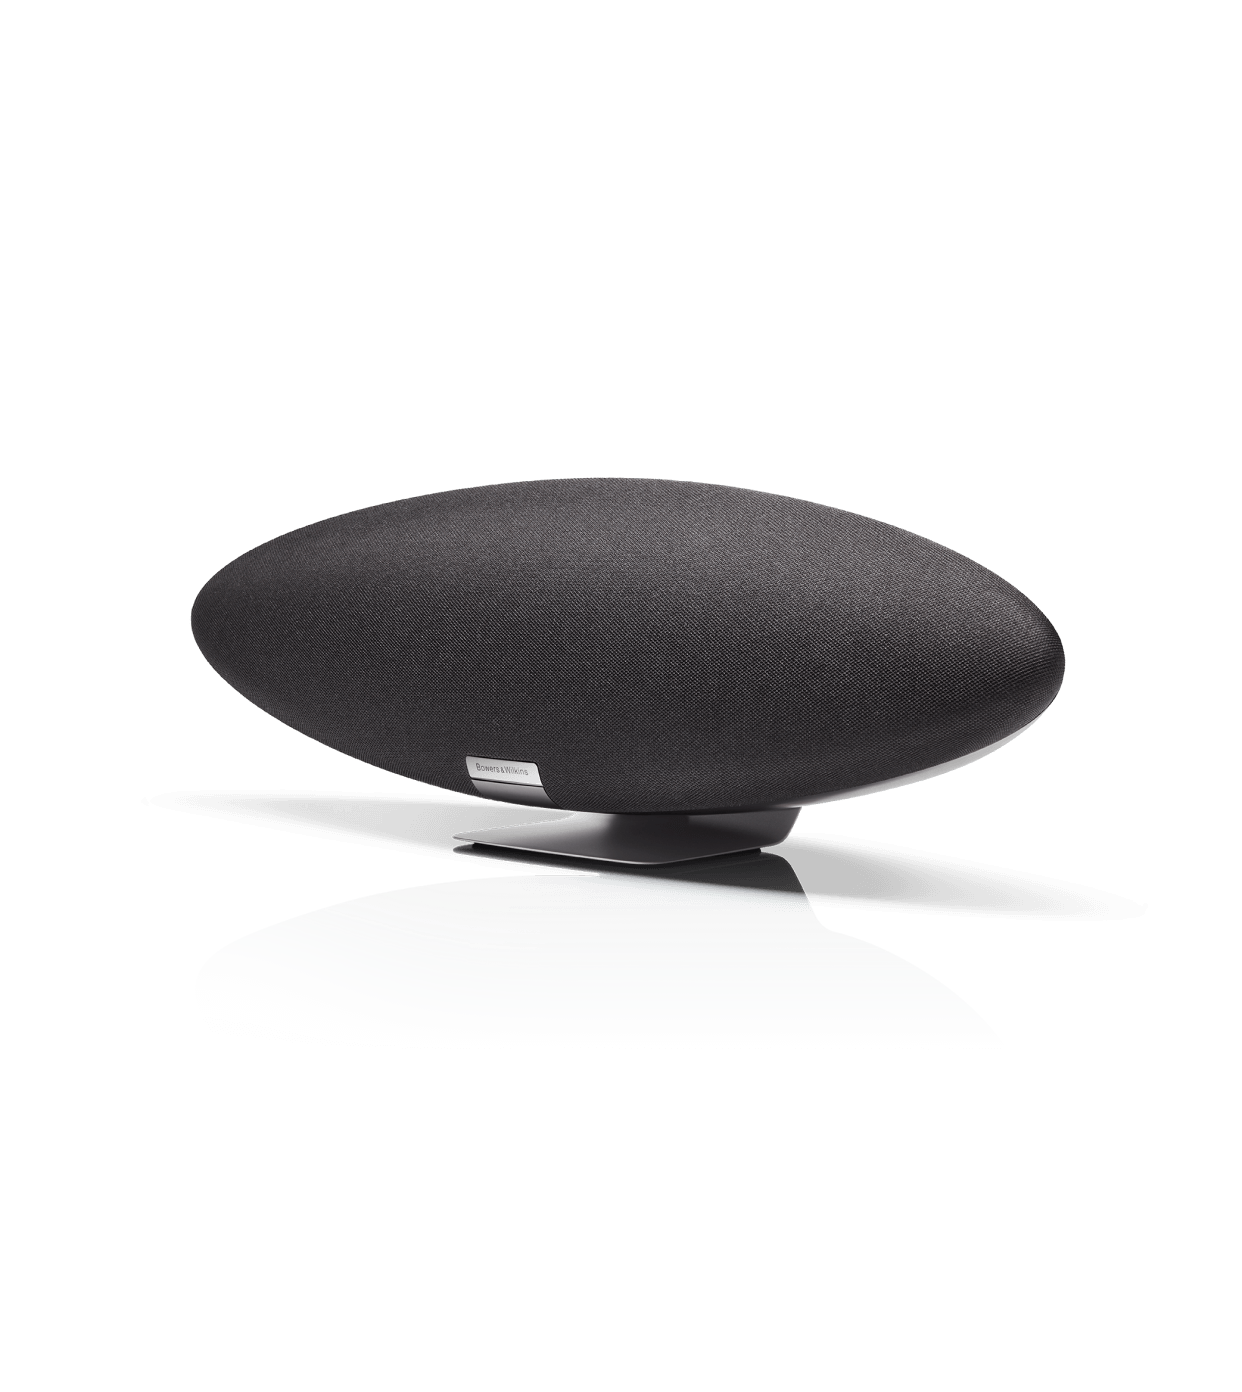 Zeppelin Wireless Smart Speaker Bowers & Wilkins